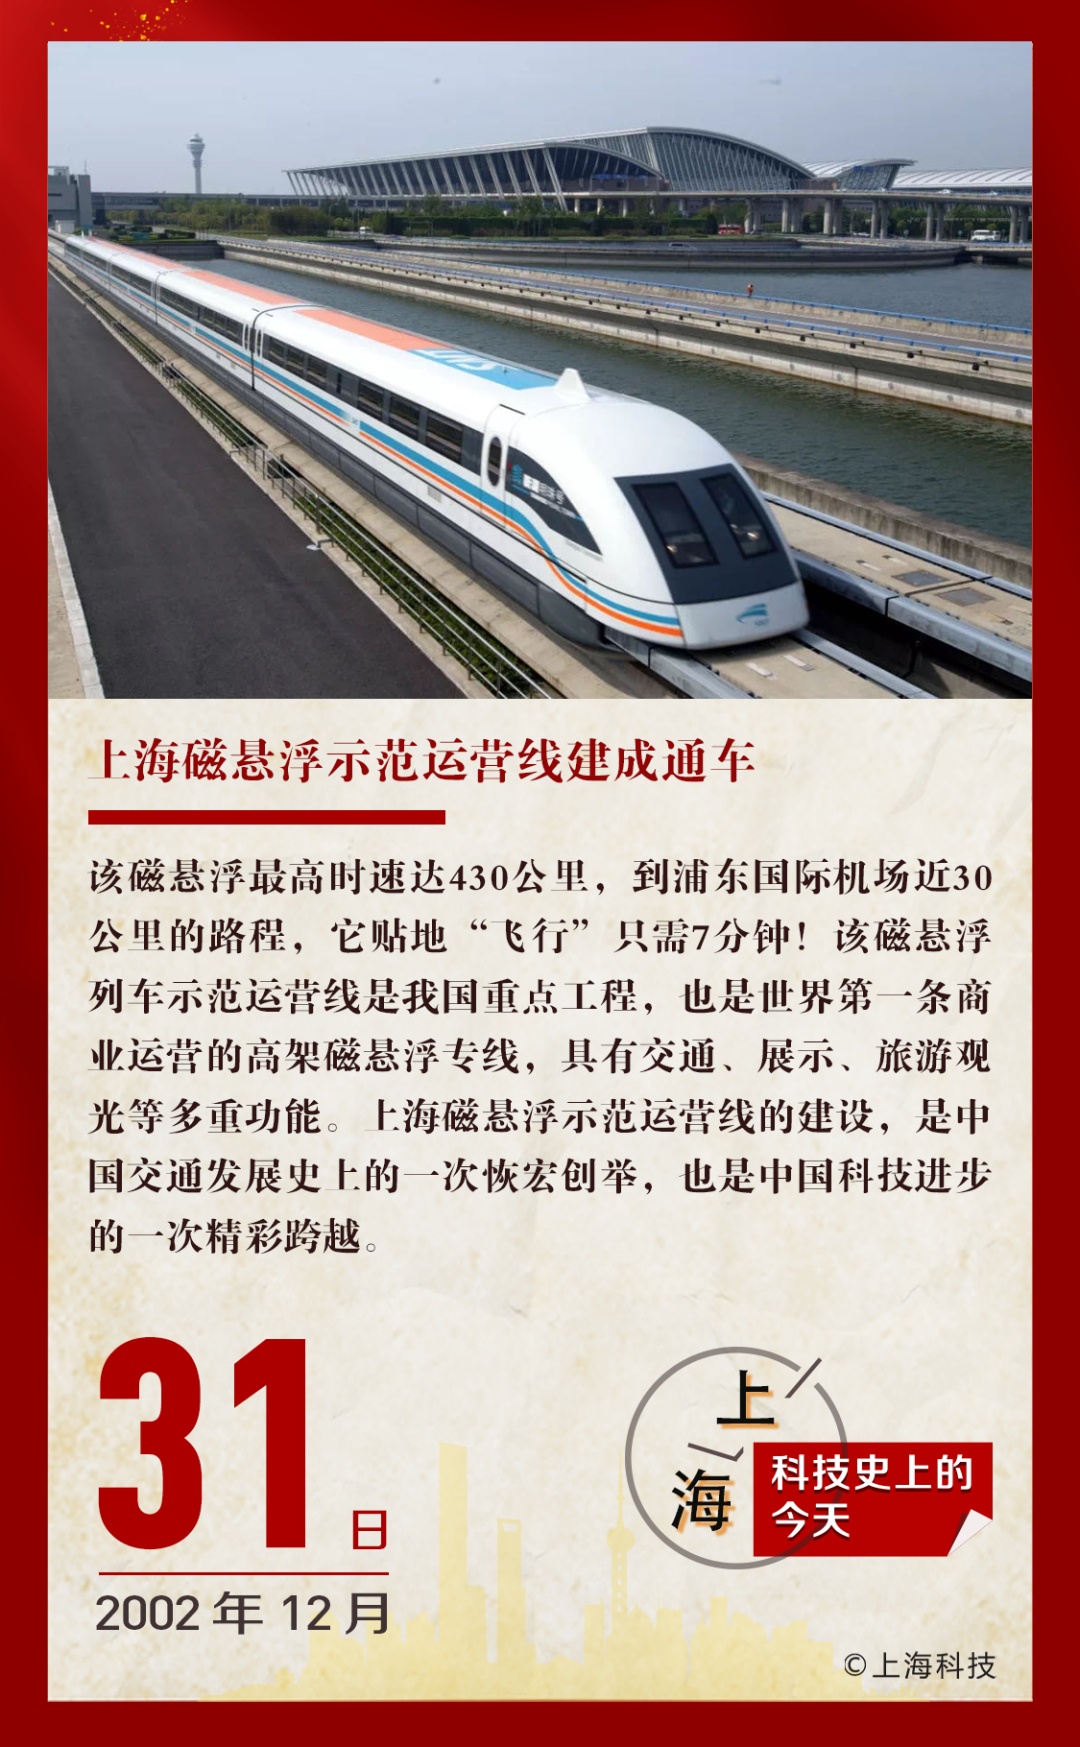 2002年的今天上海磁悬浮示范运营线建成通车回眸上海科技